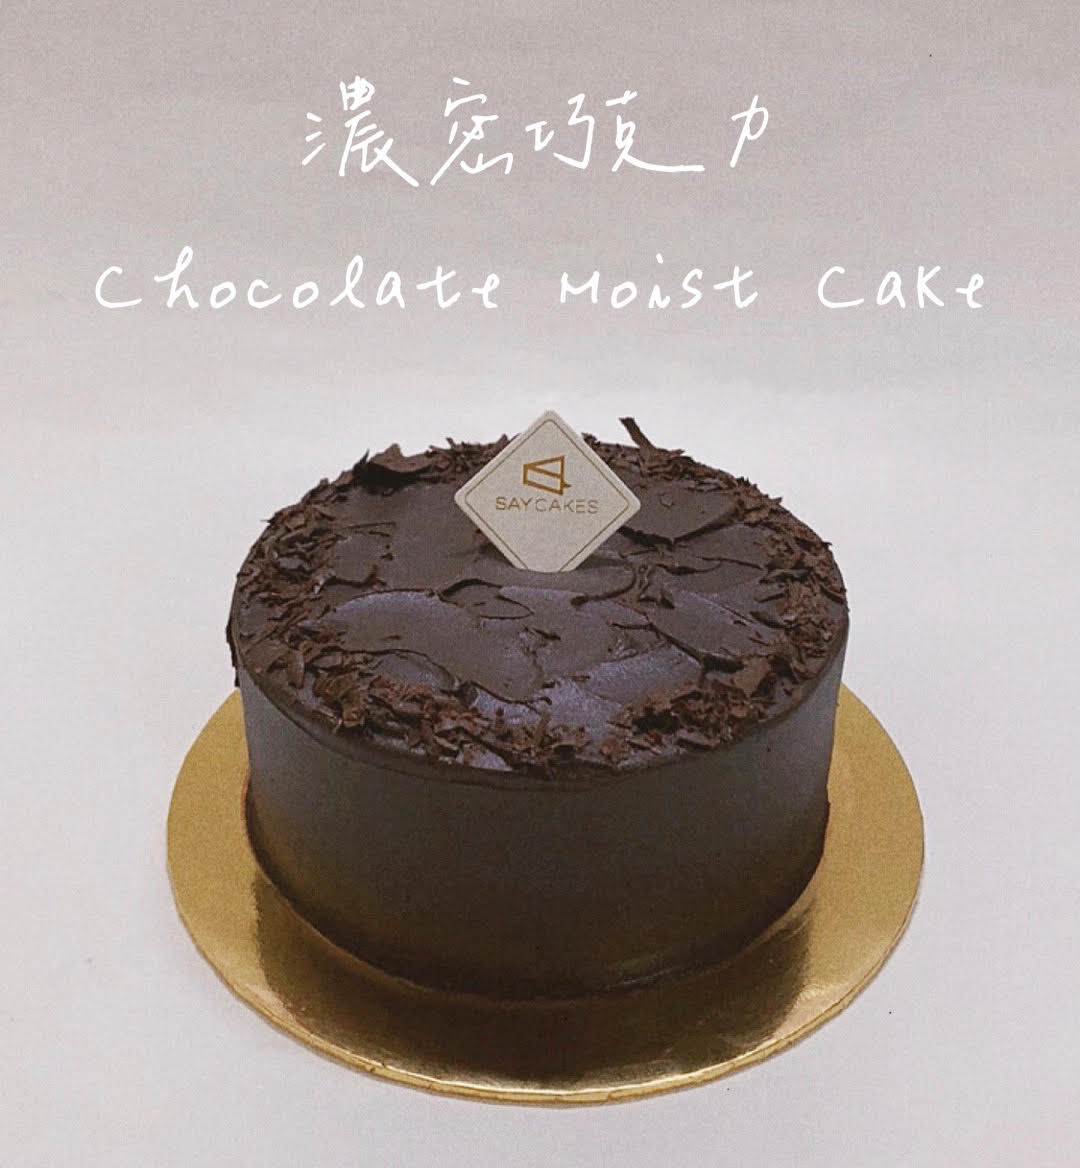 Moist chocolate cake | Woolworths TASTE